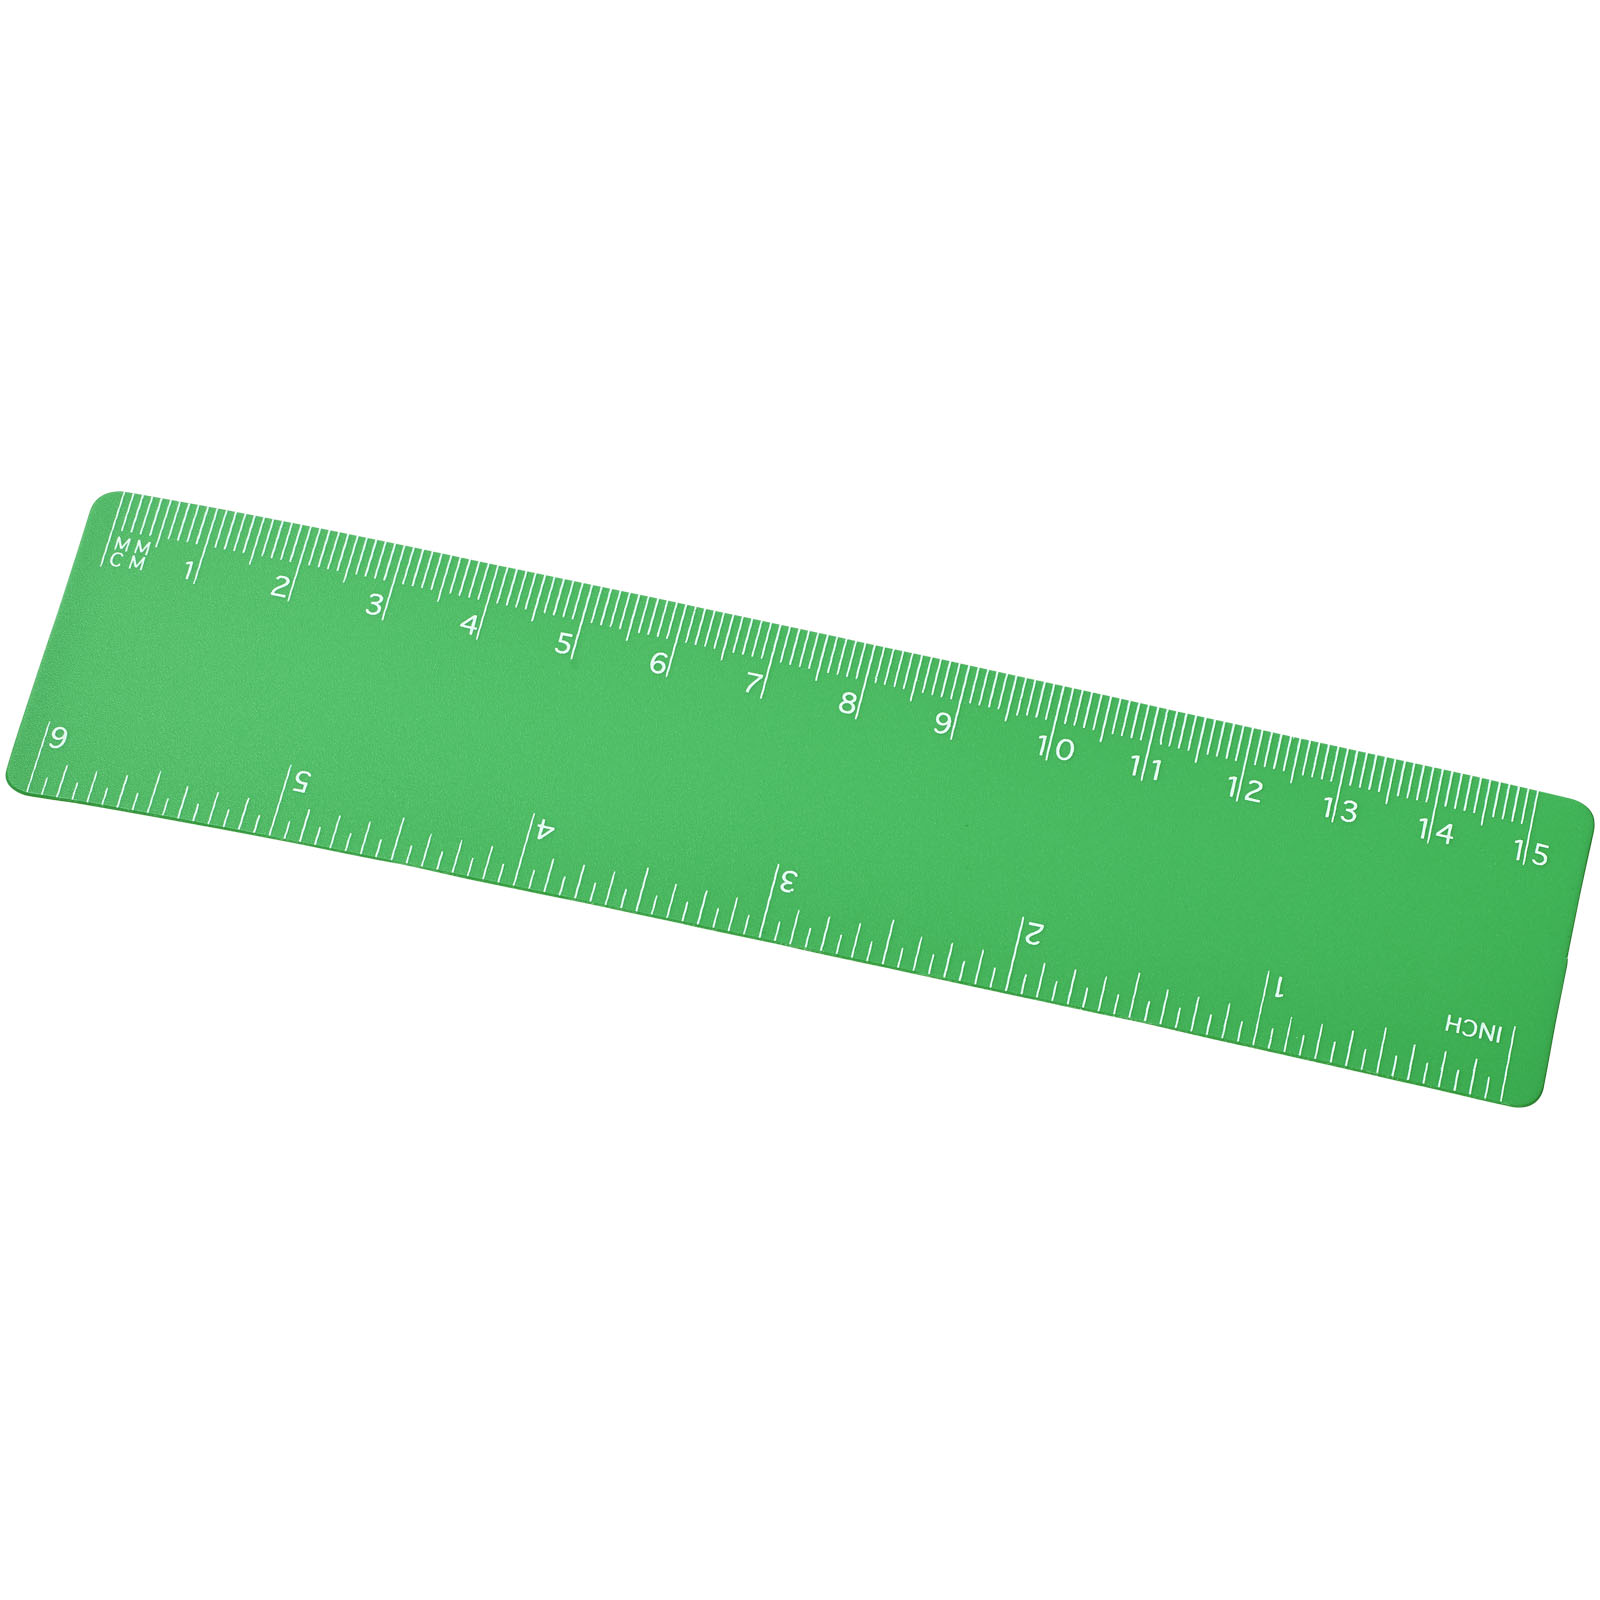 Advertising Desk Accessories - Rothko 15 cm plastic ruler